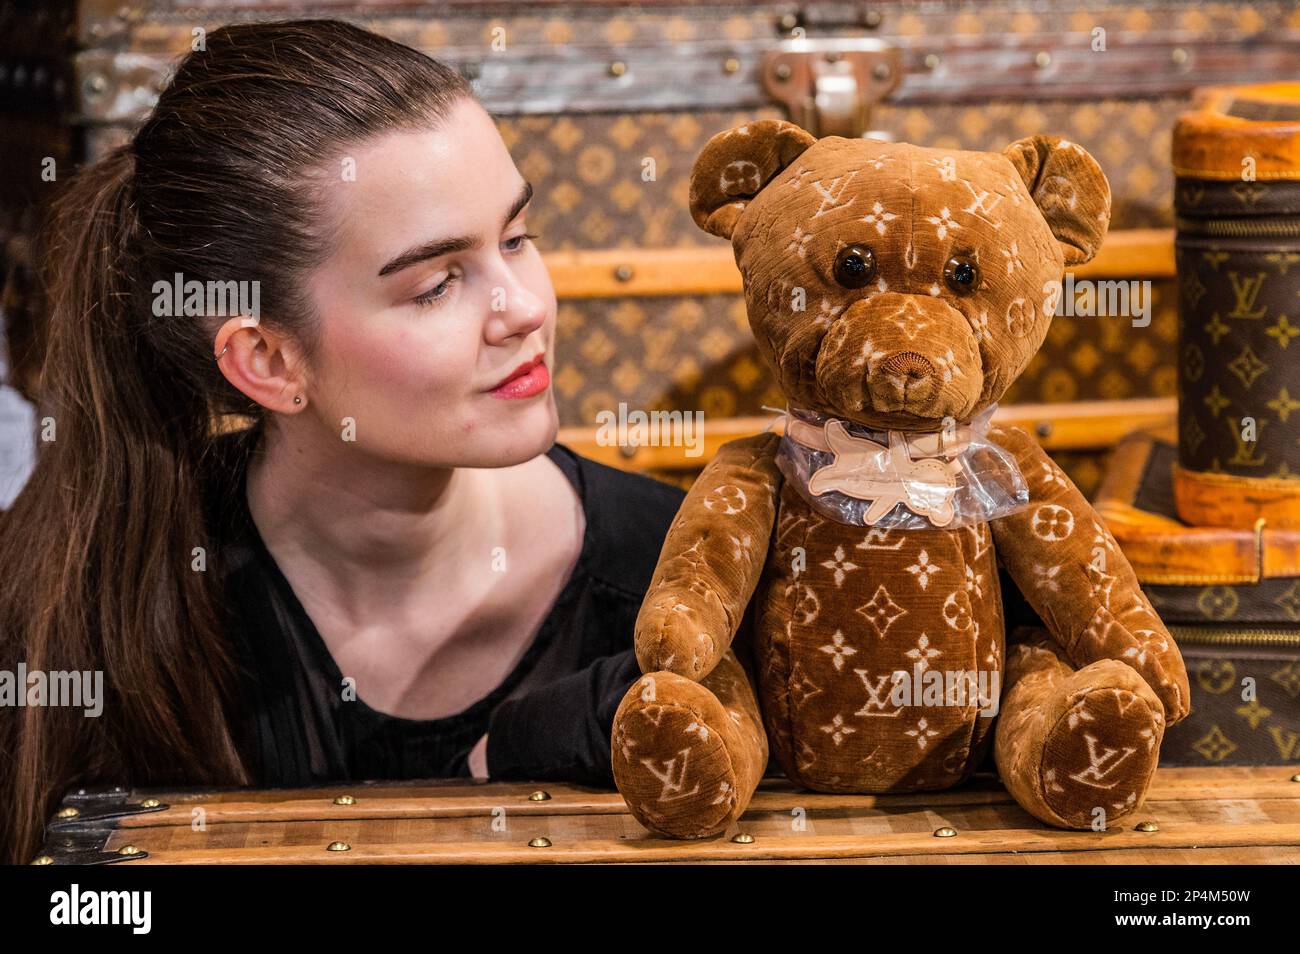 Louis Vuitton Doudou 2021 Teddy Bear